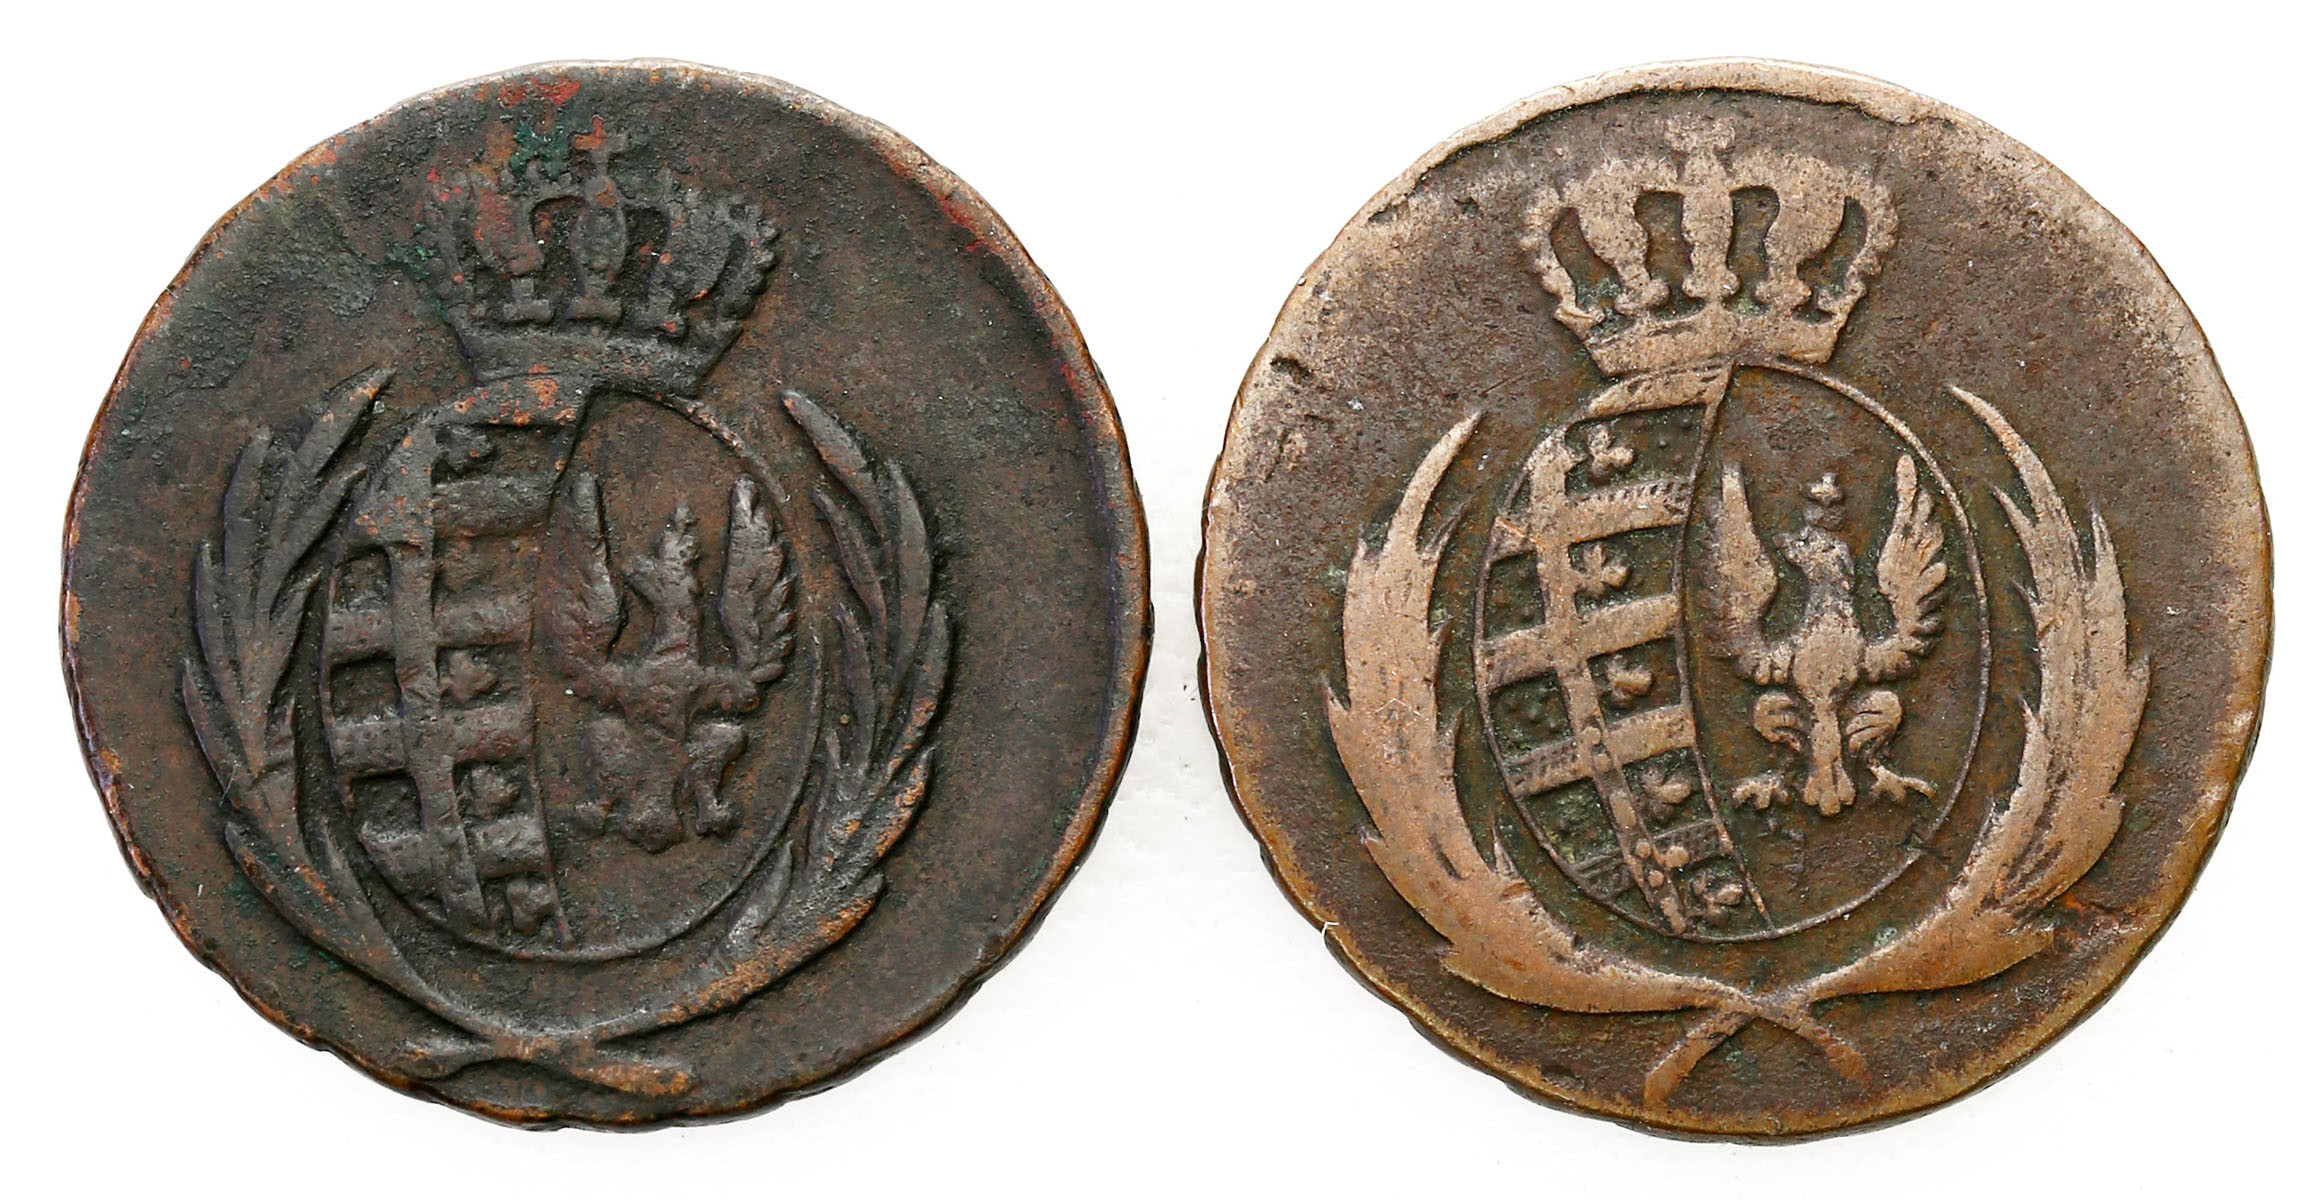 Księstwo Warszawskie. 3 grosze (trojak) 1811 IS, 1812 IB, Warszawa, zestaw 2 monet